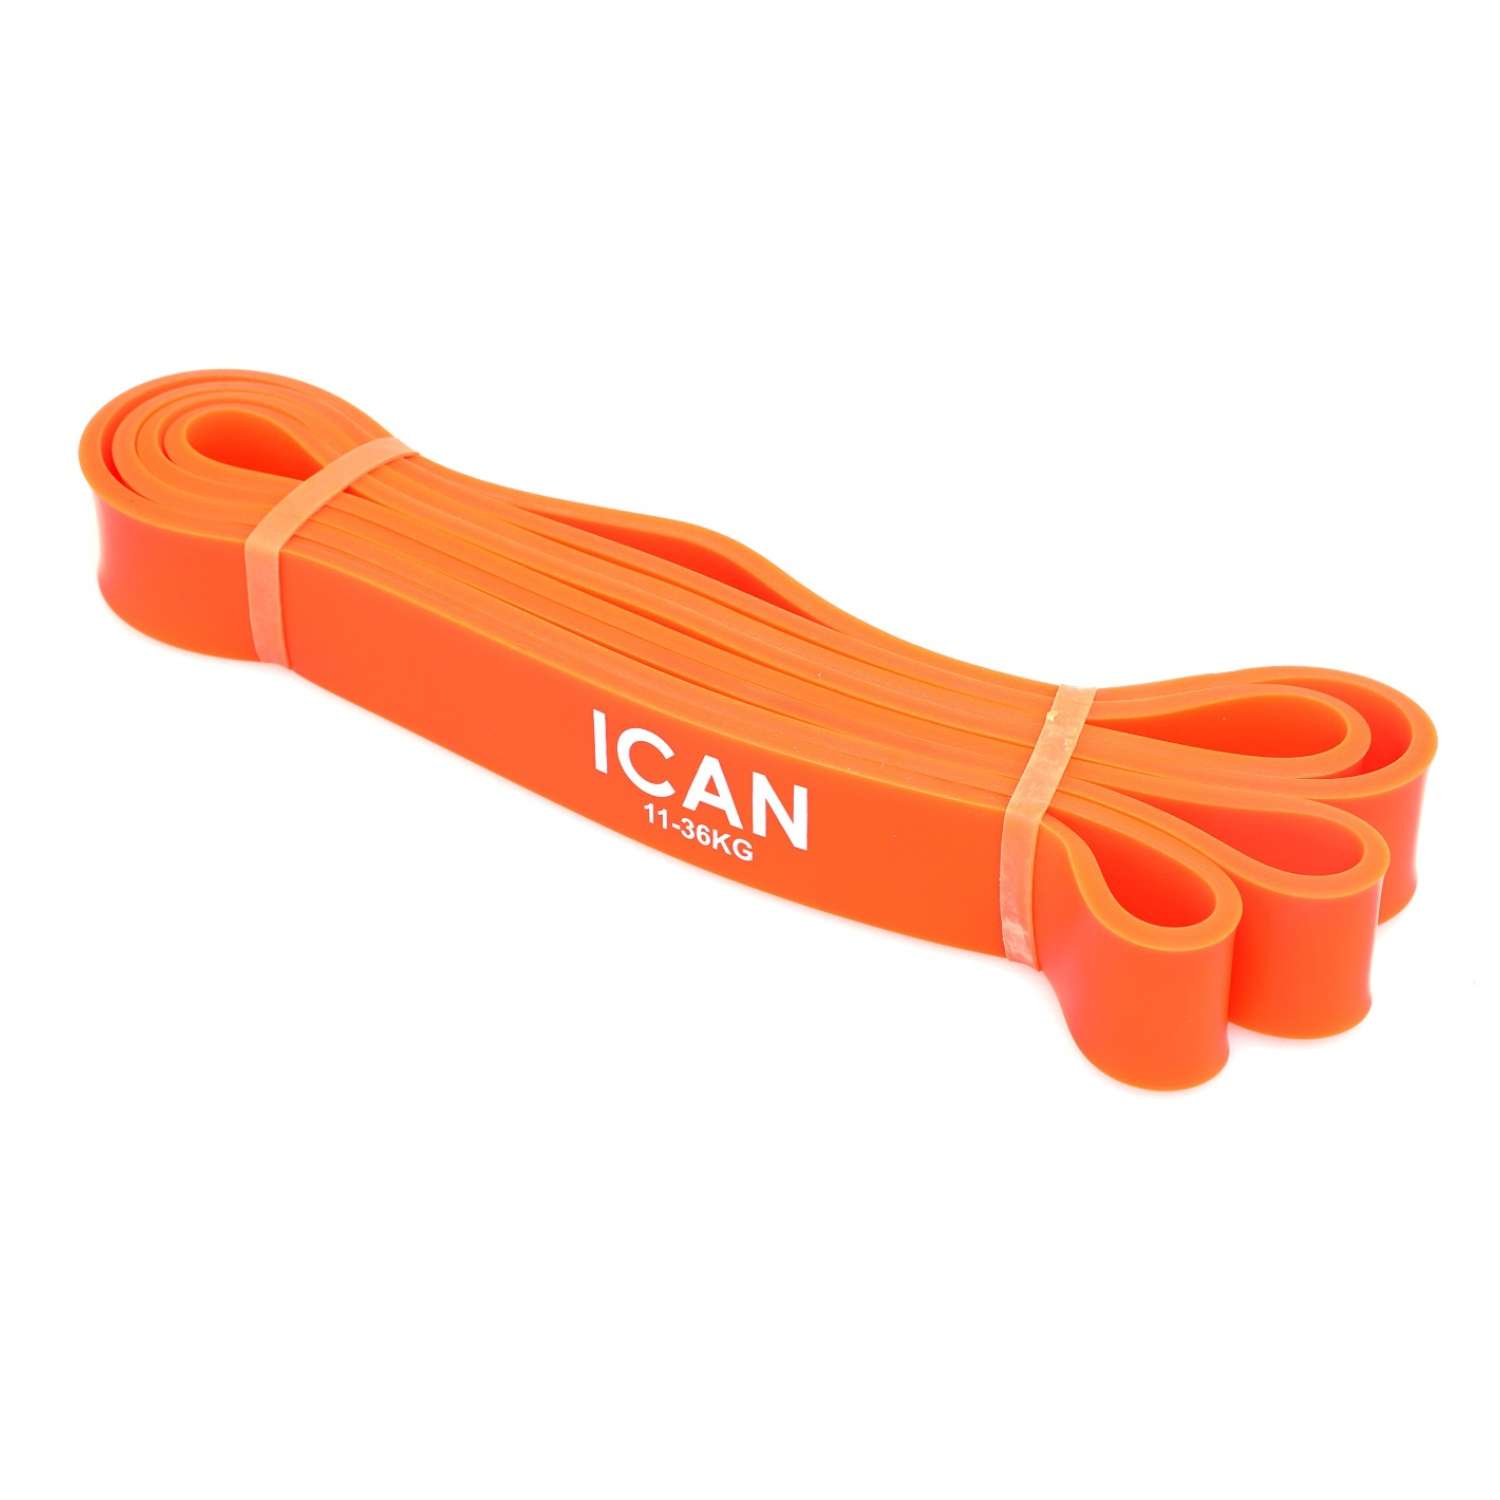 Эспандер ICAN EI-101 ленточный 11-36 кг 208х2.9 см оранжевый - фото 1